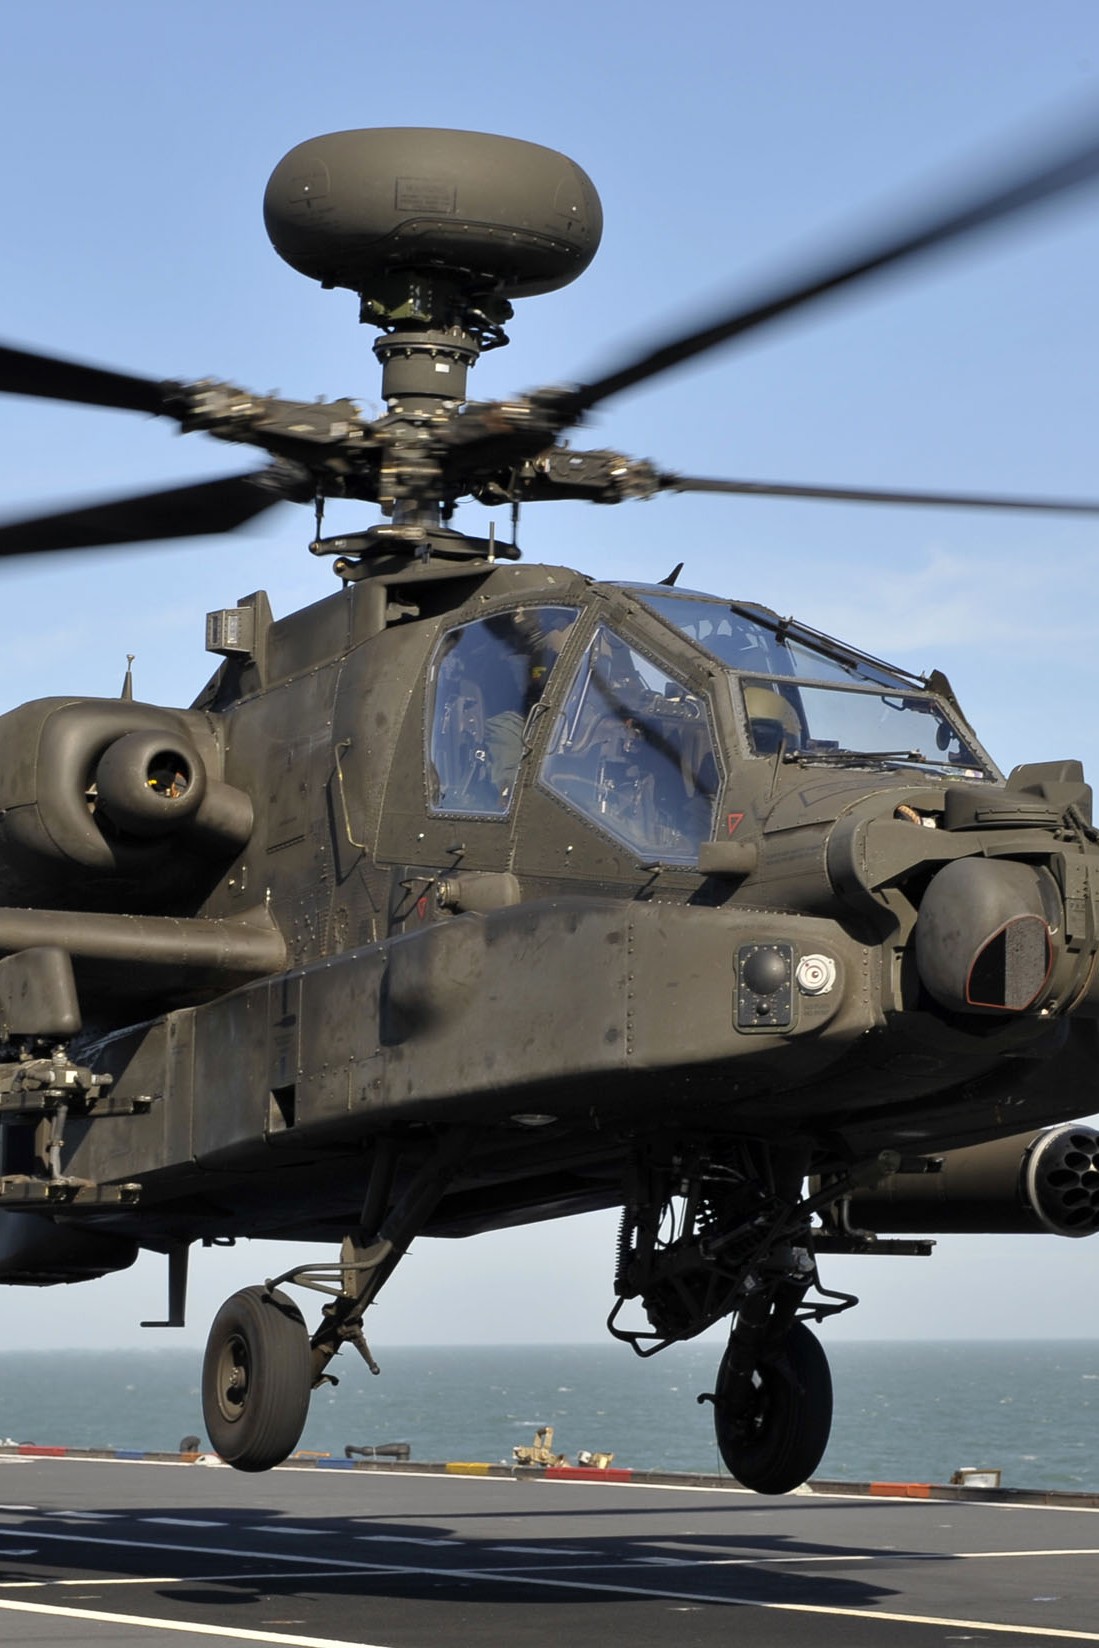 Nowe systemy ostrzegania o odpaleniu pocisków przeciwlotniczych otrzymają między innymi śmigłowce Apache brytyjskiego lotnictwa wojskowego. Fot. UK MoD/Crown Copyright via BAE Systems.